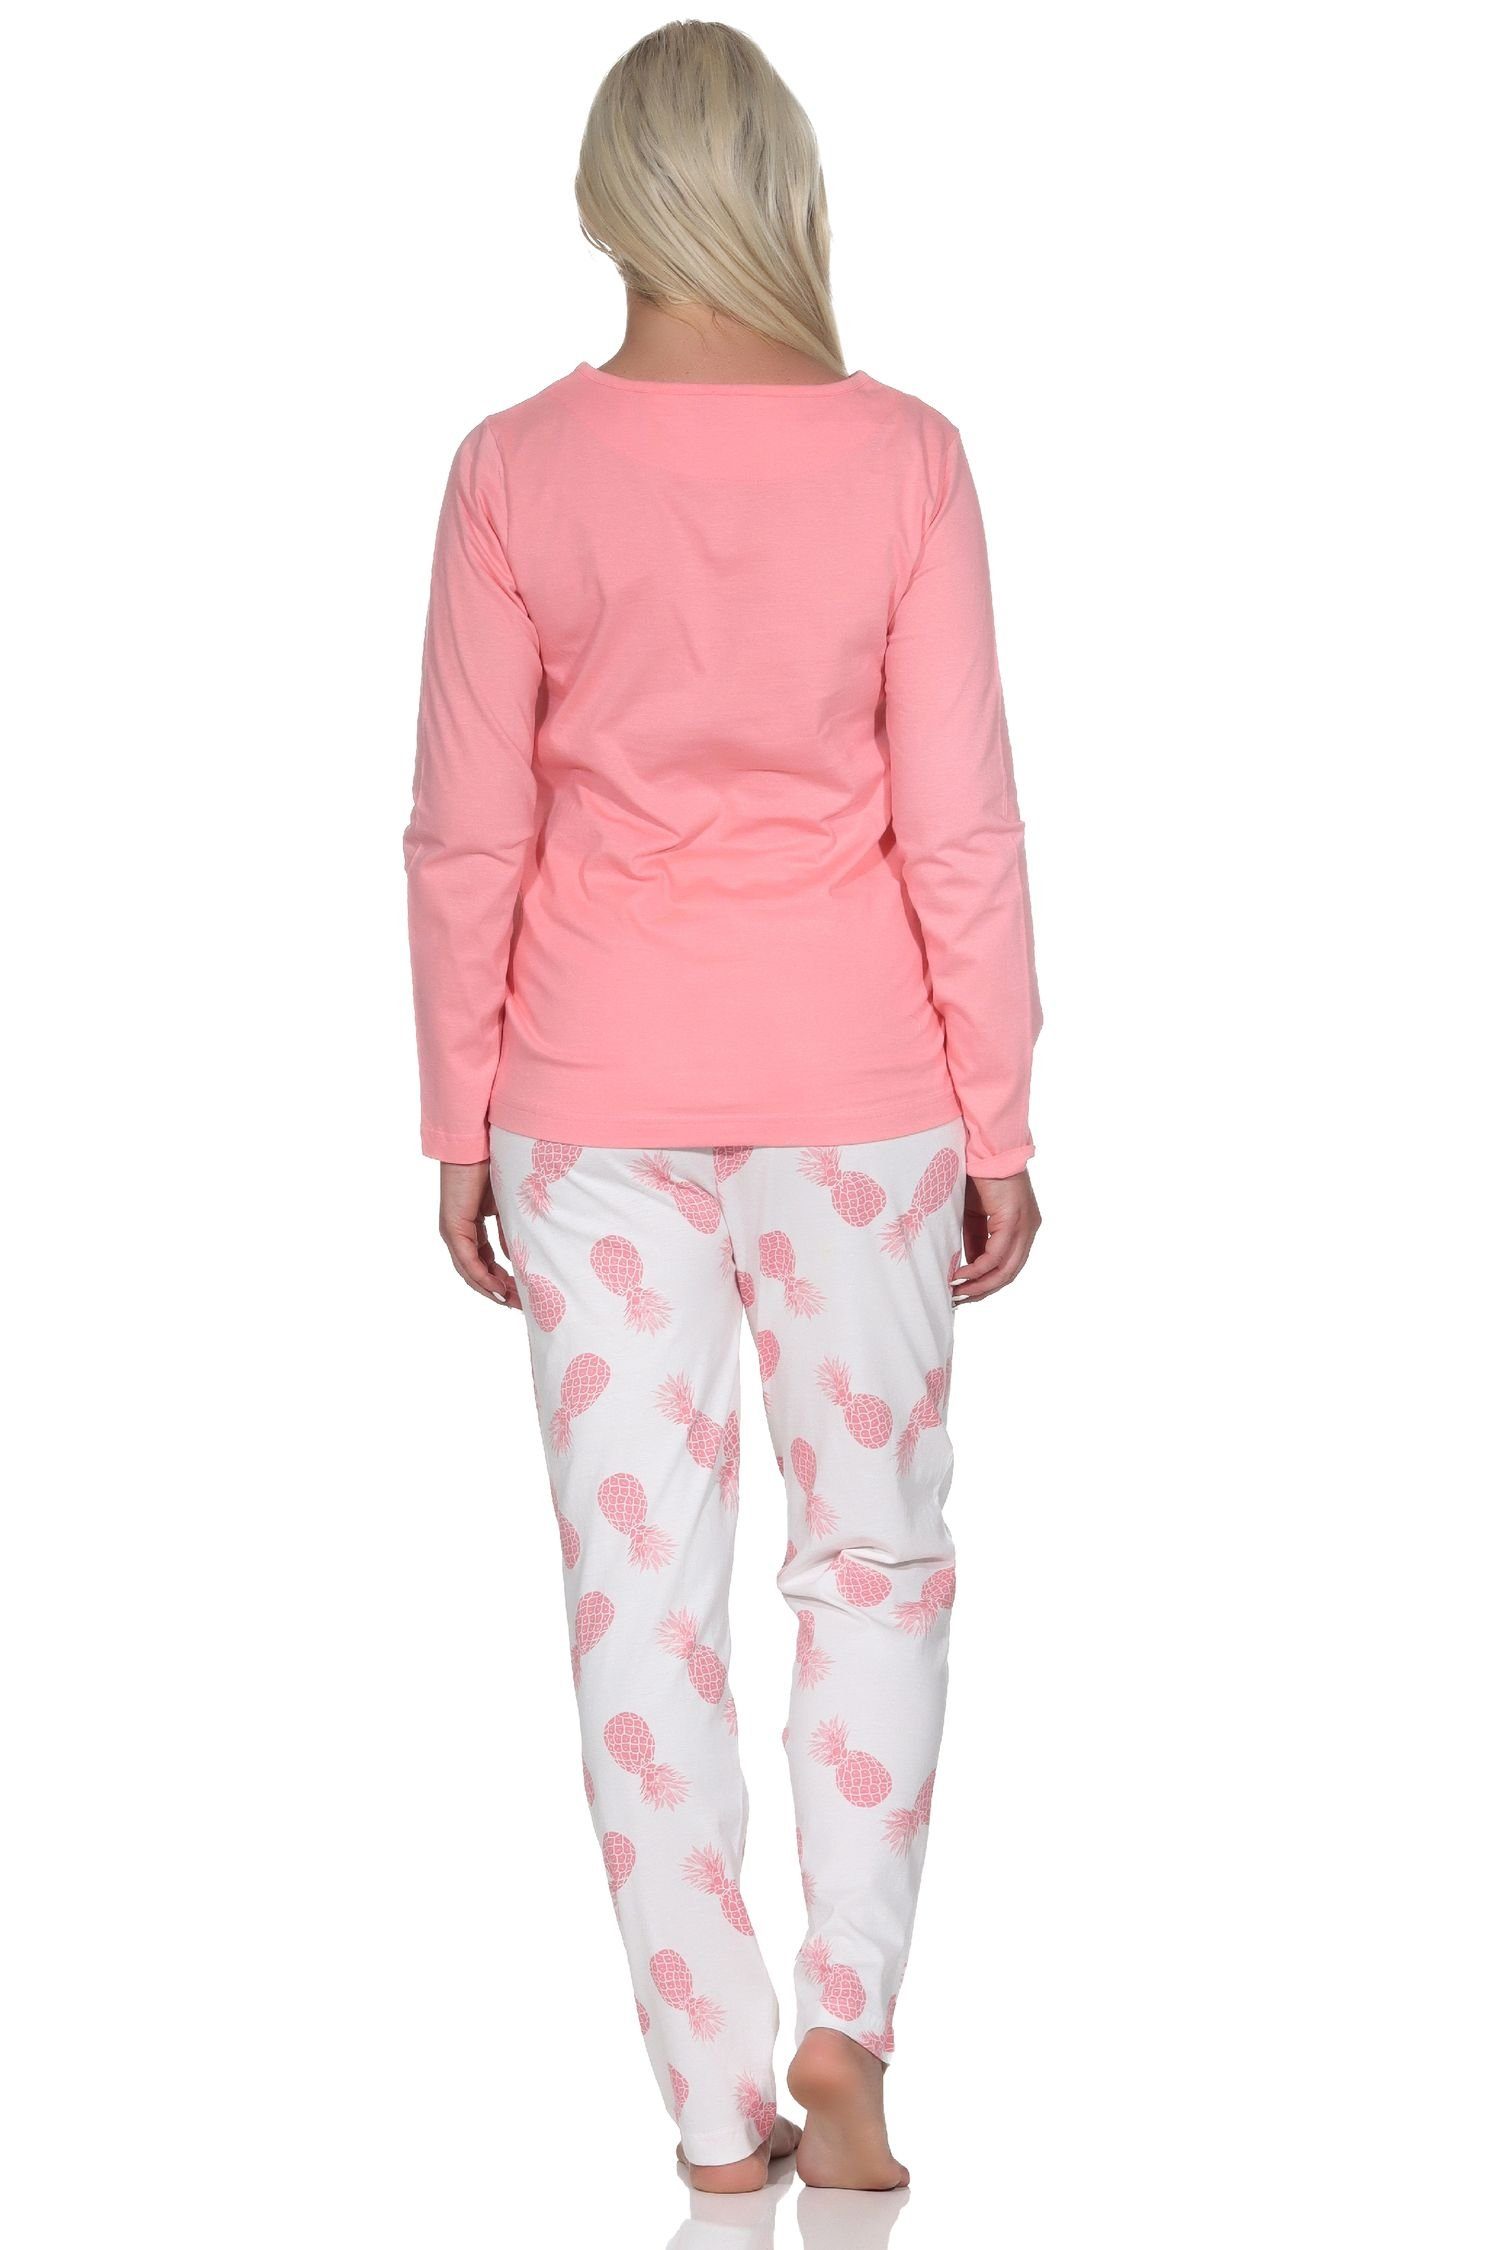 Langarm Damen Schlafanzug als Homewear Motiv Normann mit Pyjama rosa Ananas